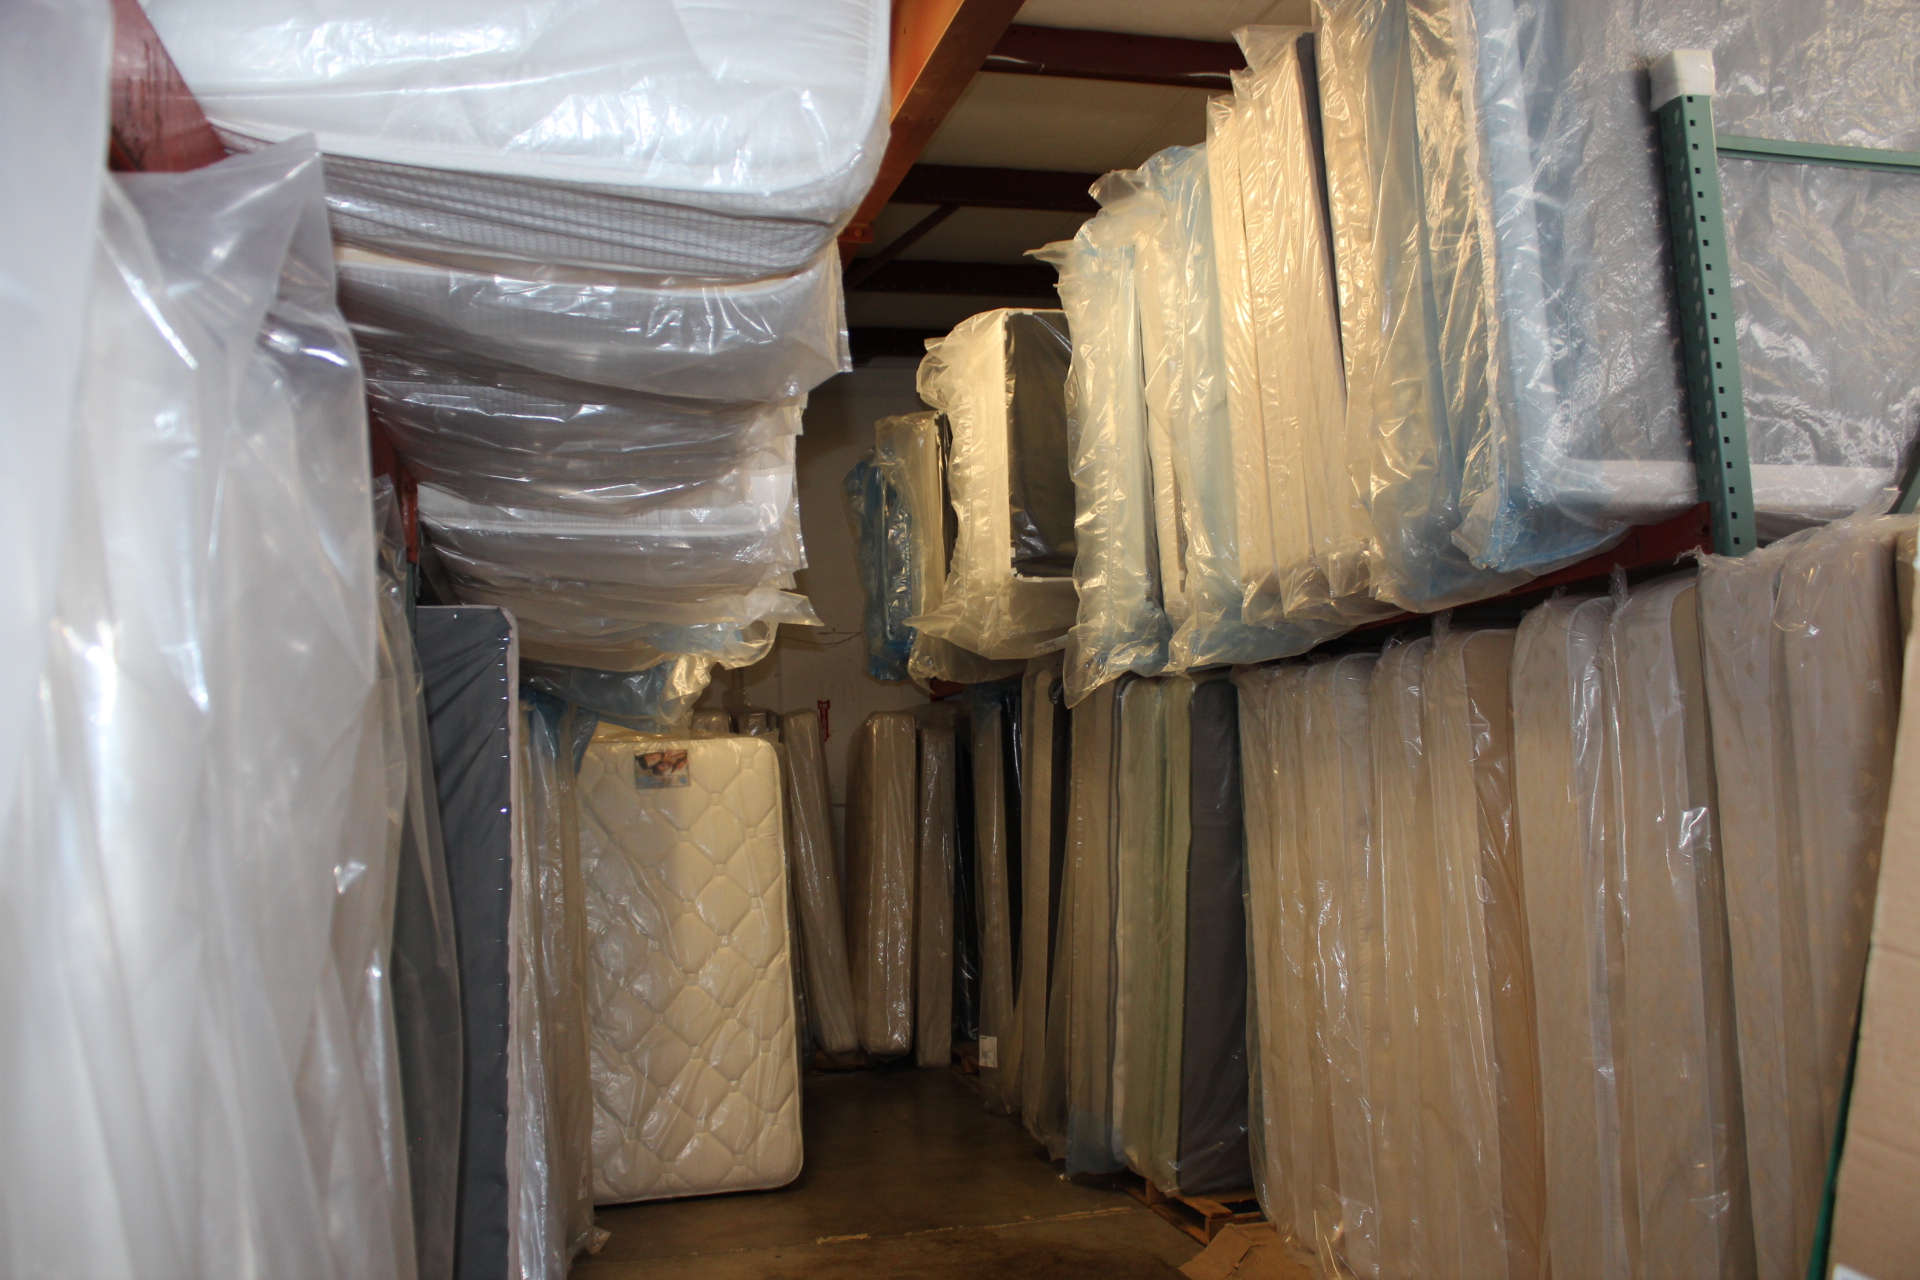 wholesale mattress shop near me